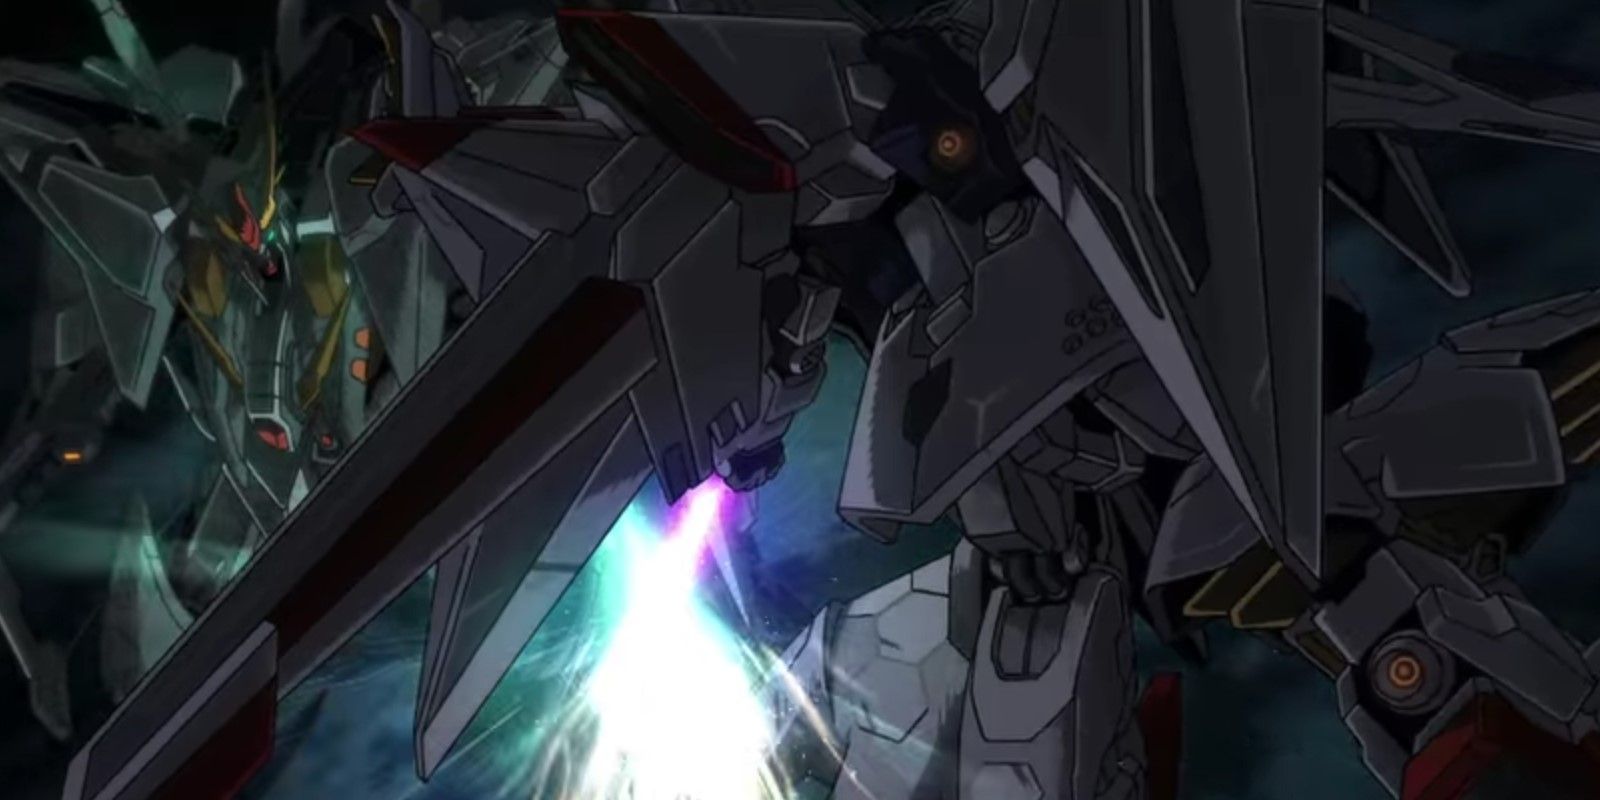 MSG Hathaway the Xi Gundam fighting against the Penelope Gundam